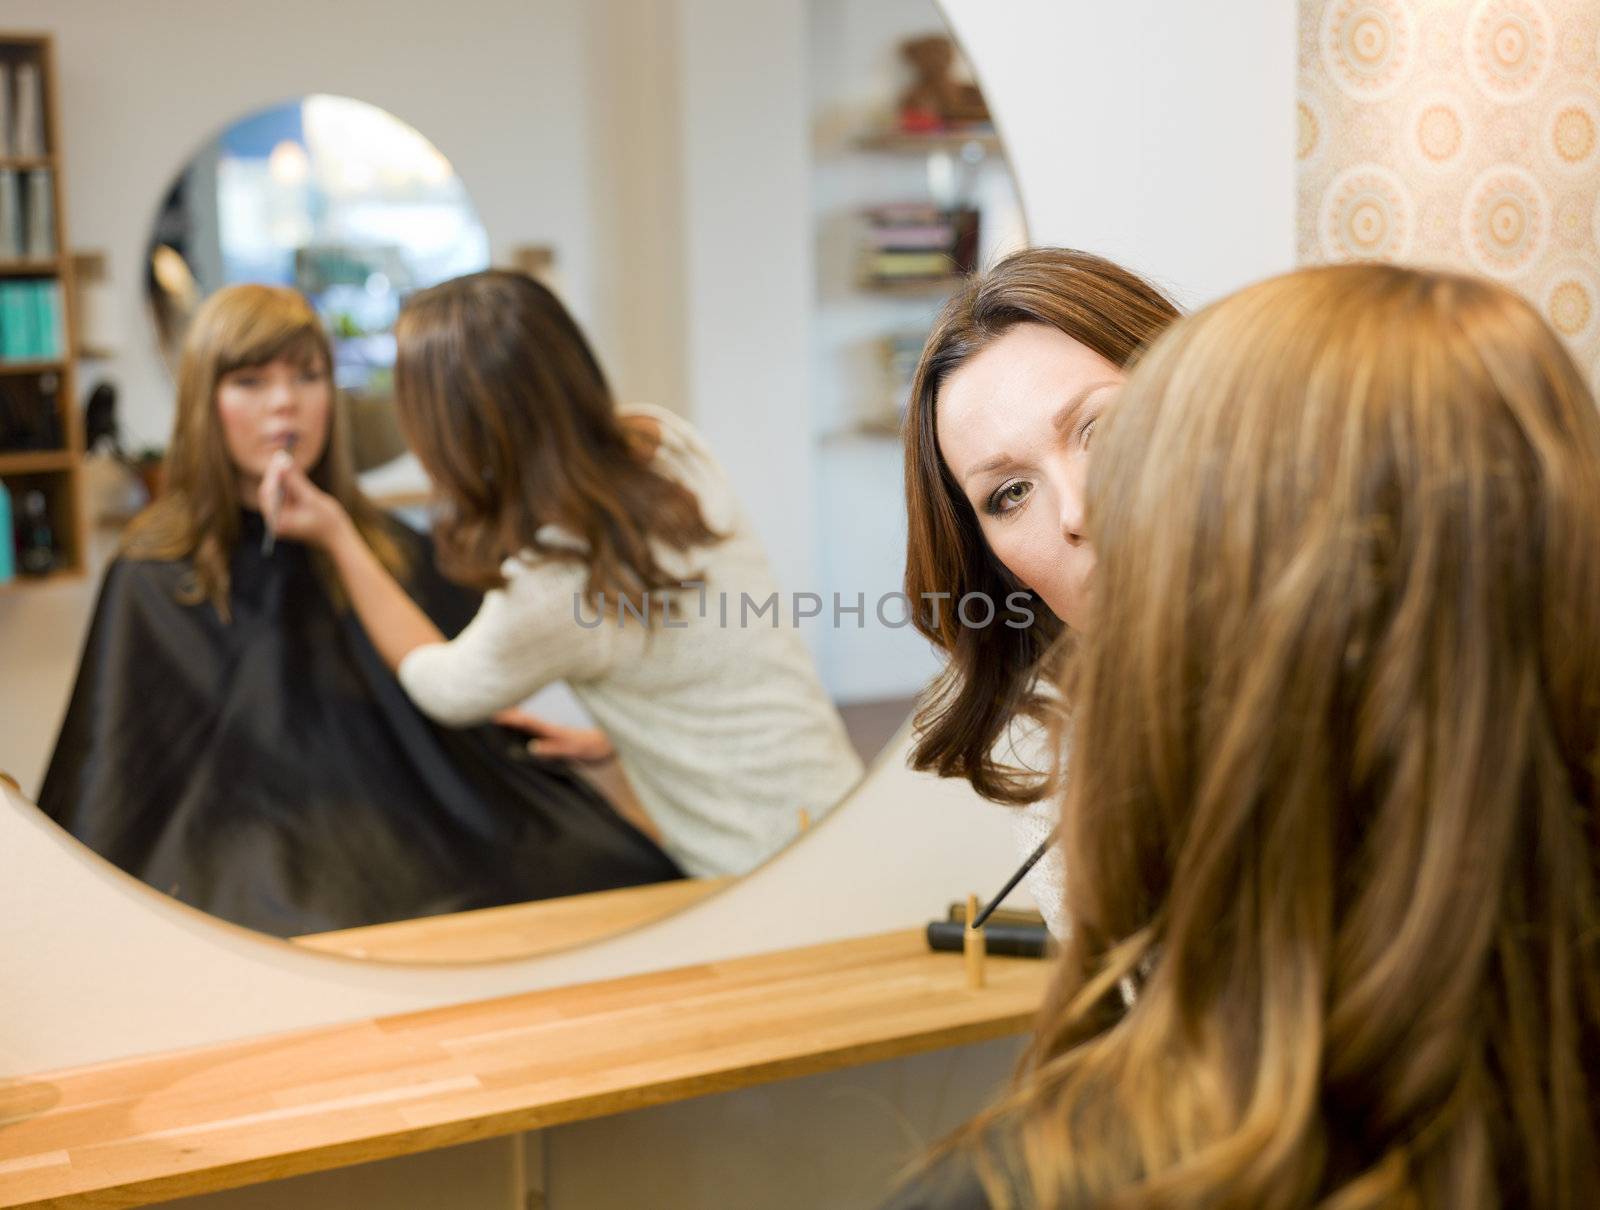 Women in beauty salon by gemenacom